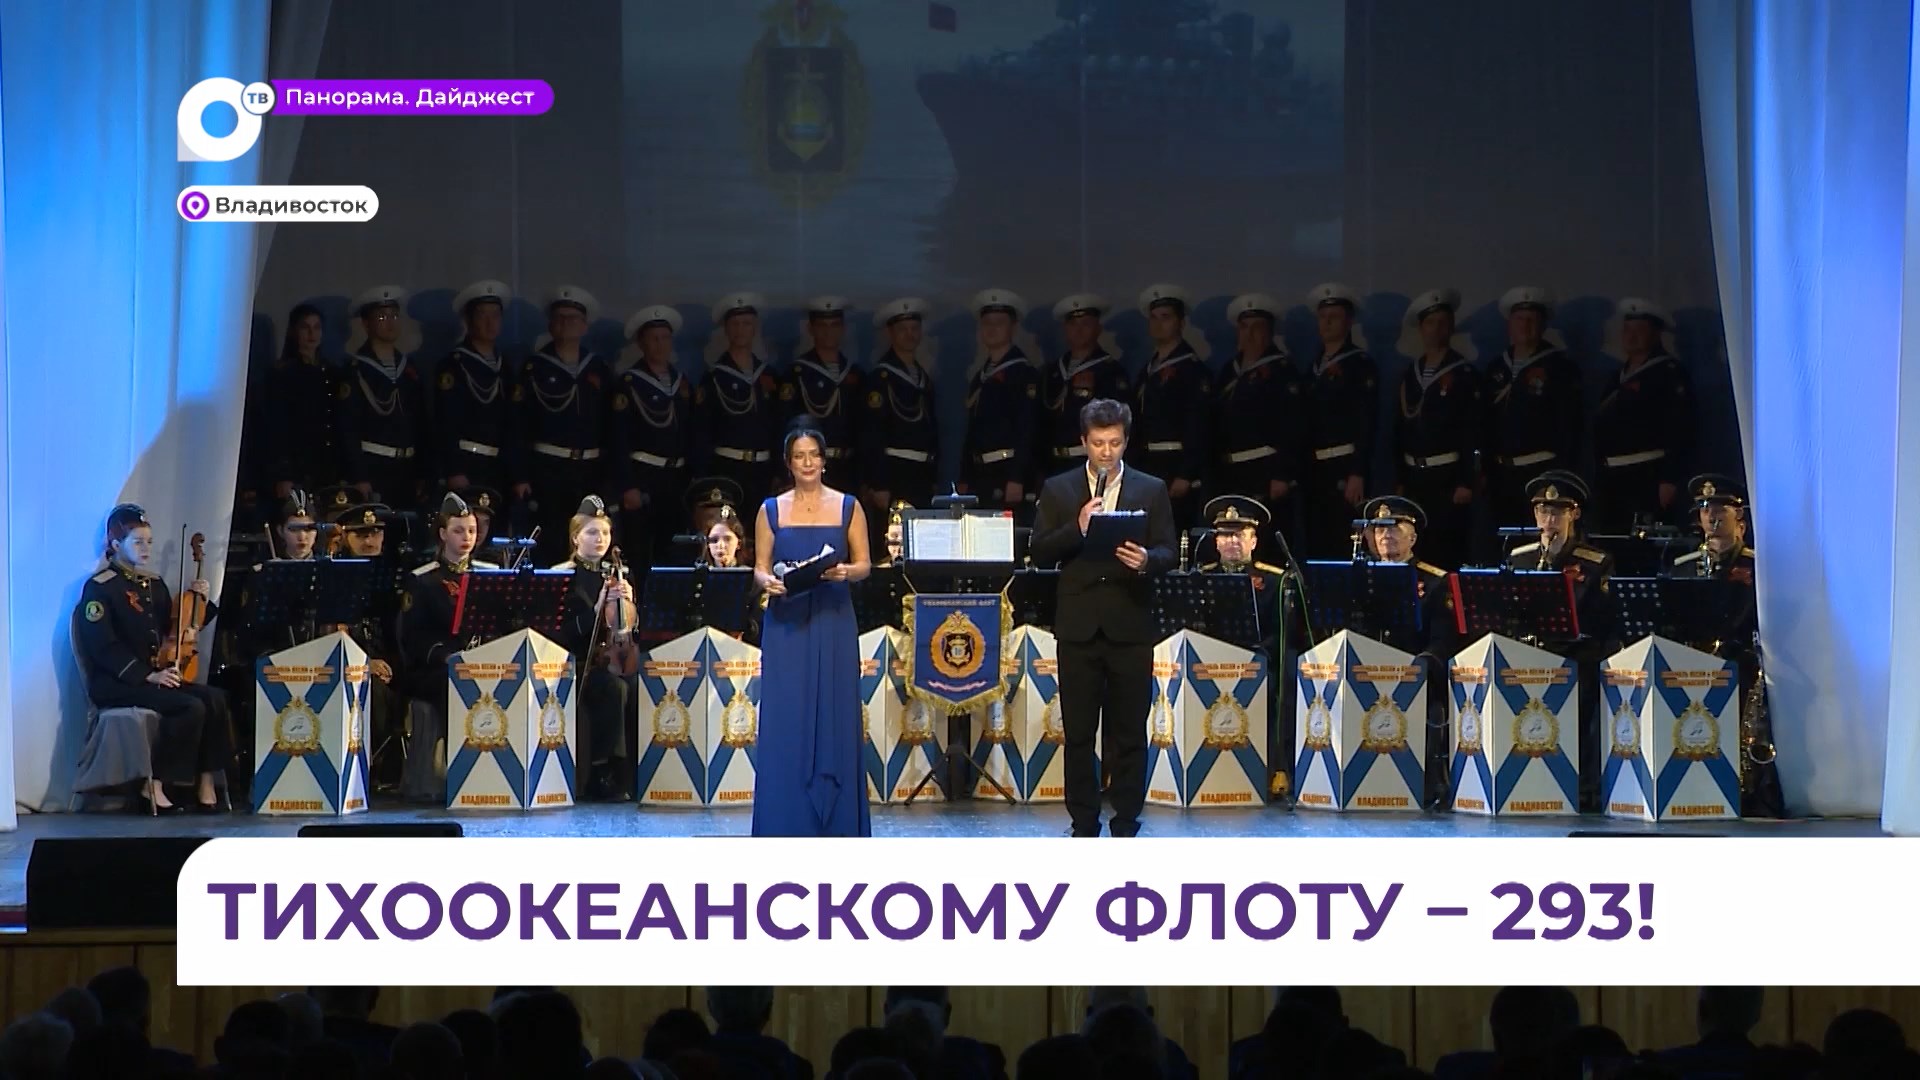 Олег Кожемяко поздравил военных моряков и ветеранов с Днем Тихоокеанского флота